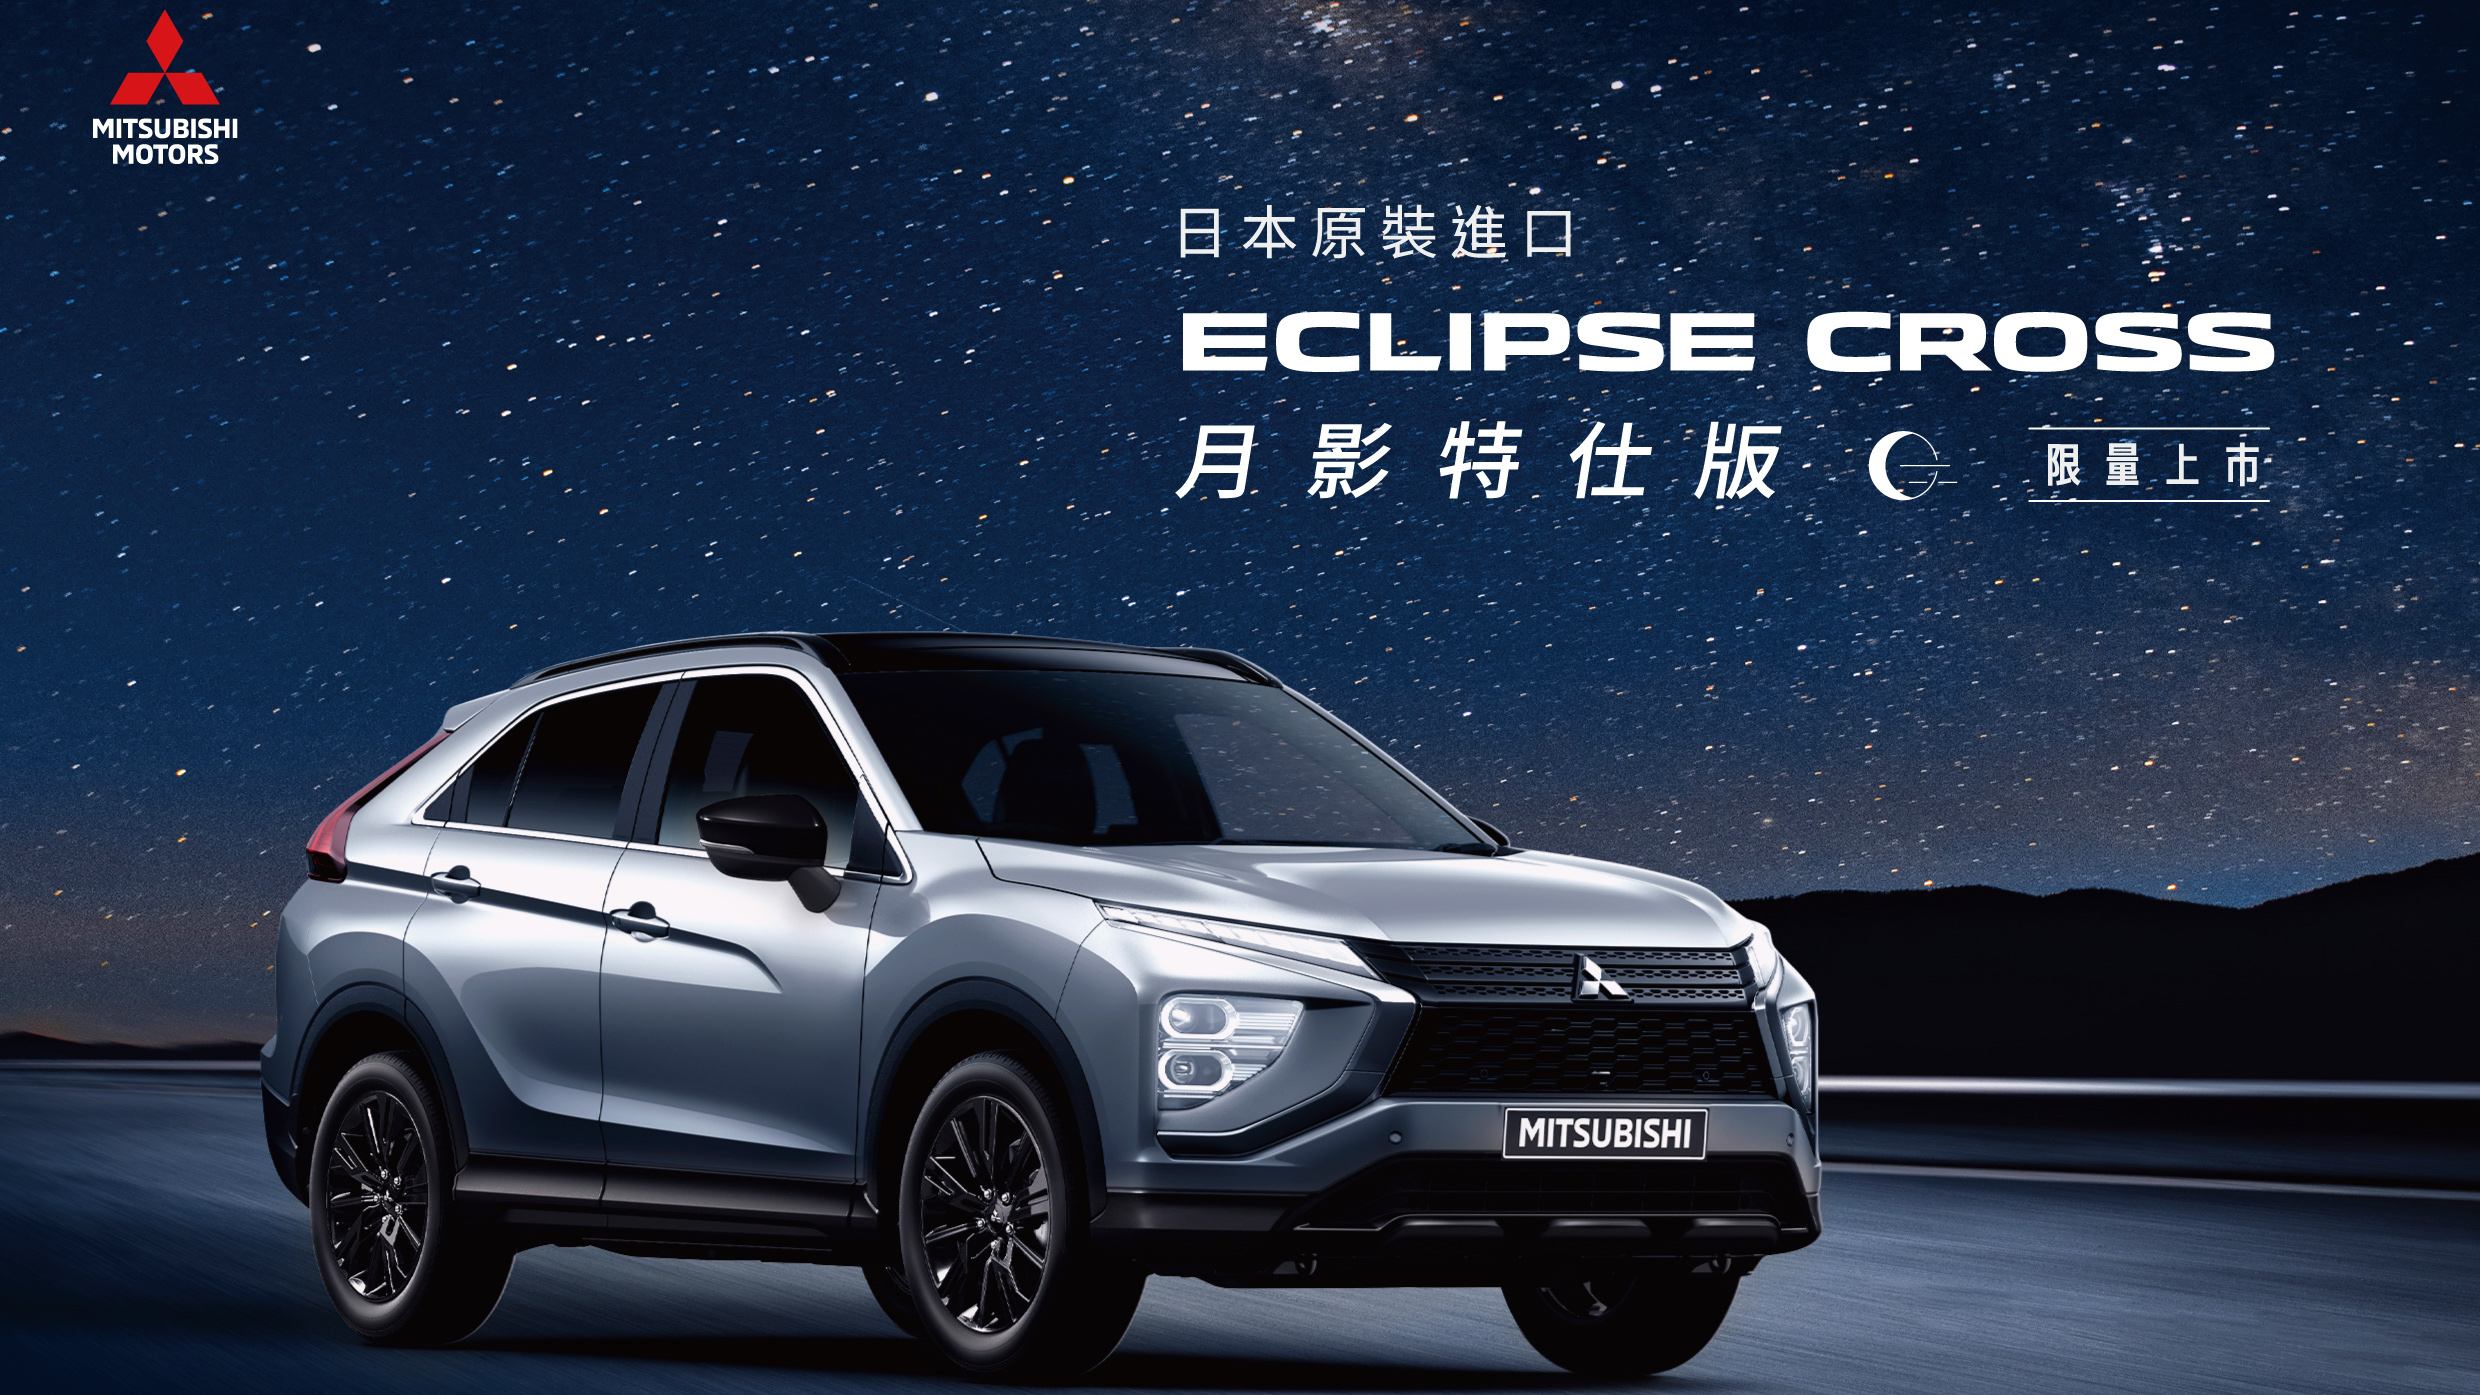 中華三菱 117.8 萬元起限量推出 Eclipse Cross 月影特仕版